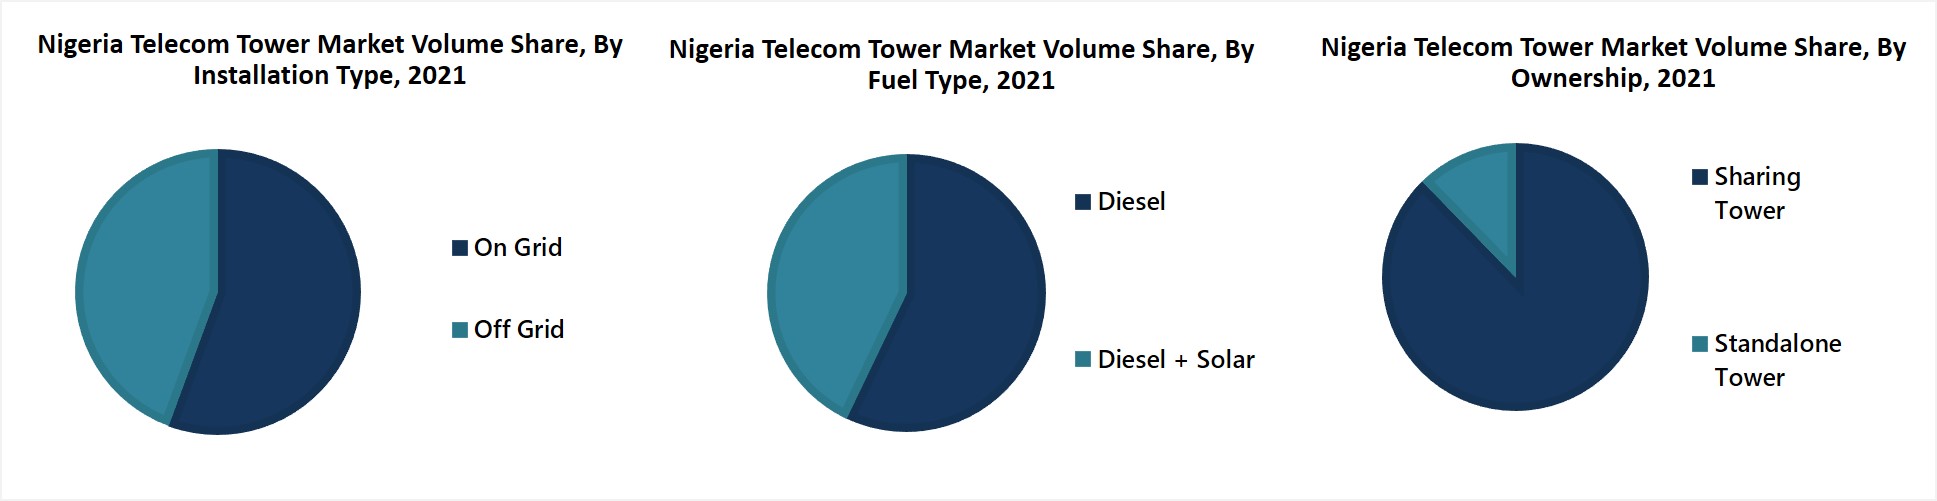 Nigeria Telecom Towers Market Revenue Share